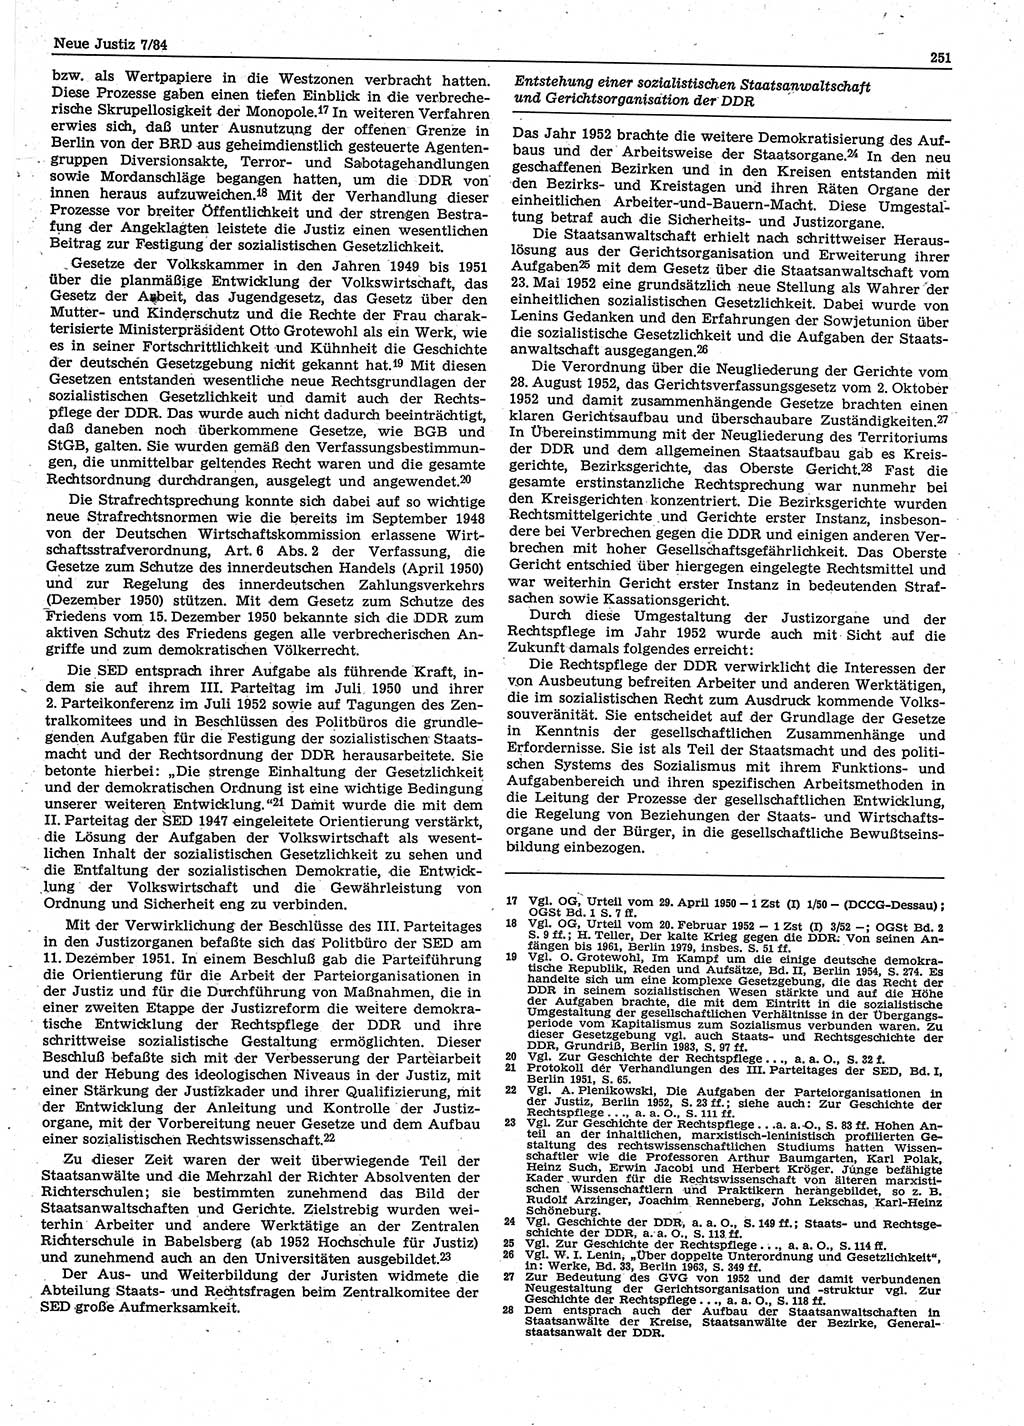 Neue Justiz (NJ), Zeitschrift für sozialistisches Recht und Gesetzlichkeit [Deutsche Demokratische Republik (DDR)], 38. Jahrgang 1984, Seite 251 (NJ DDR 1984, S. 251)